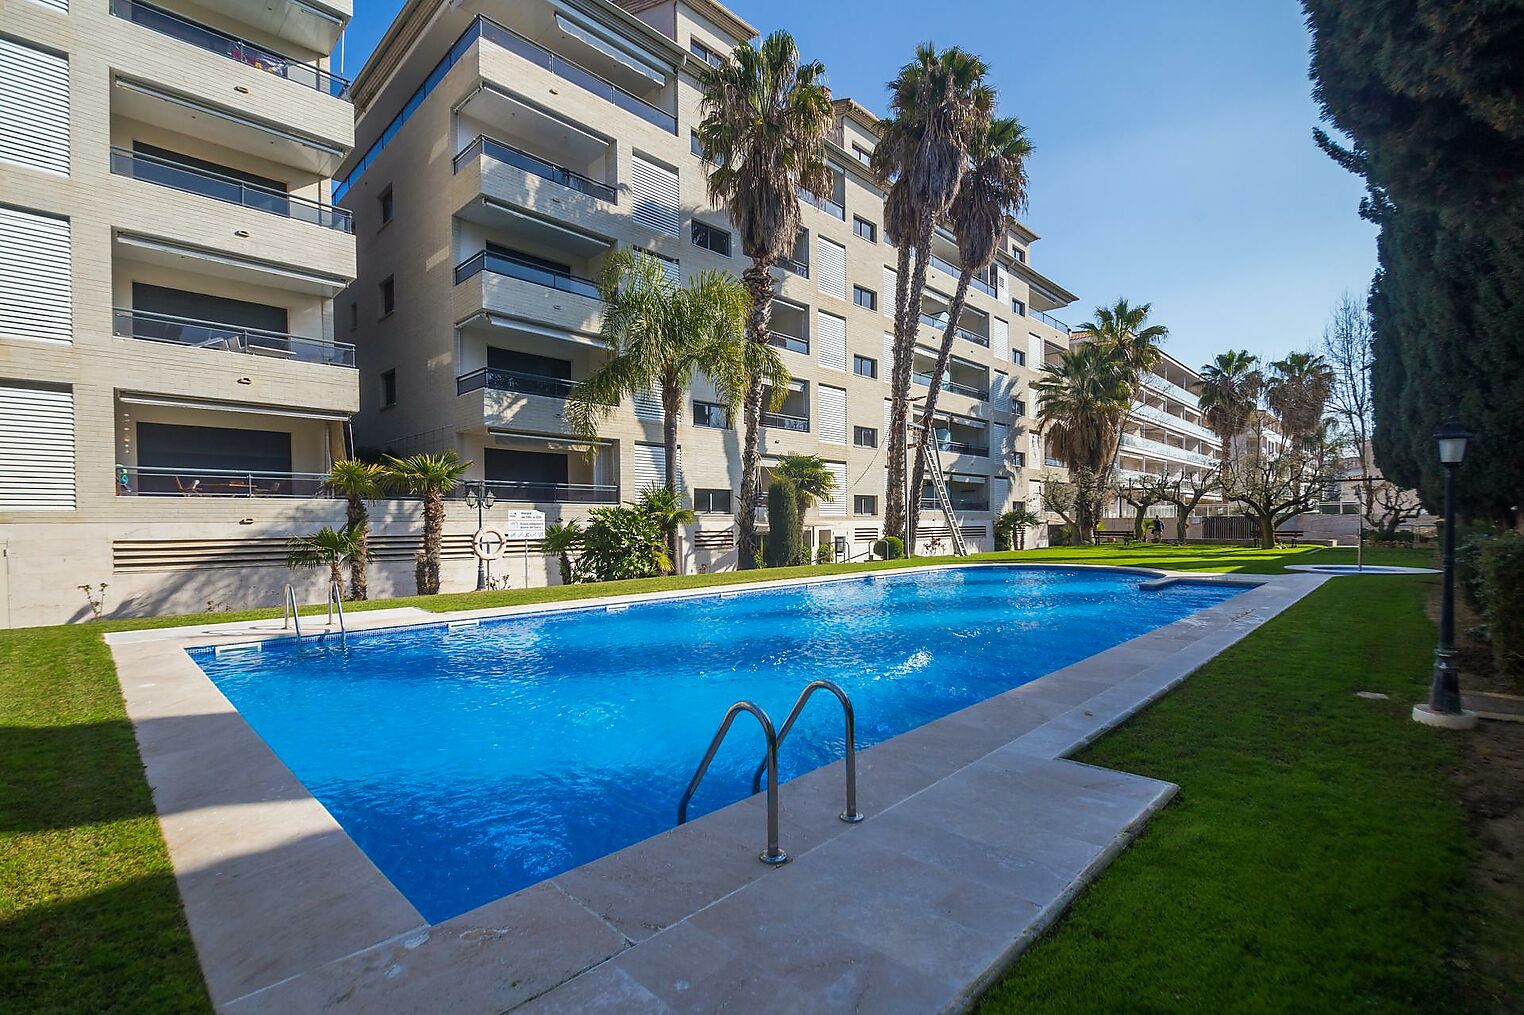 Apartamento moderno en la zona del puerto de Platja d'Aro, con piscina comunitaria